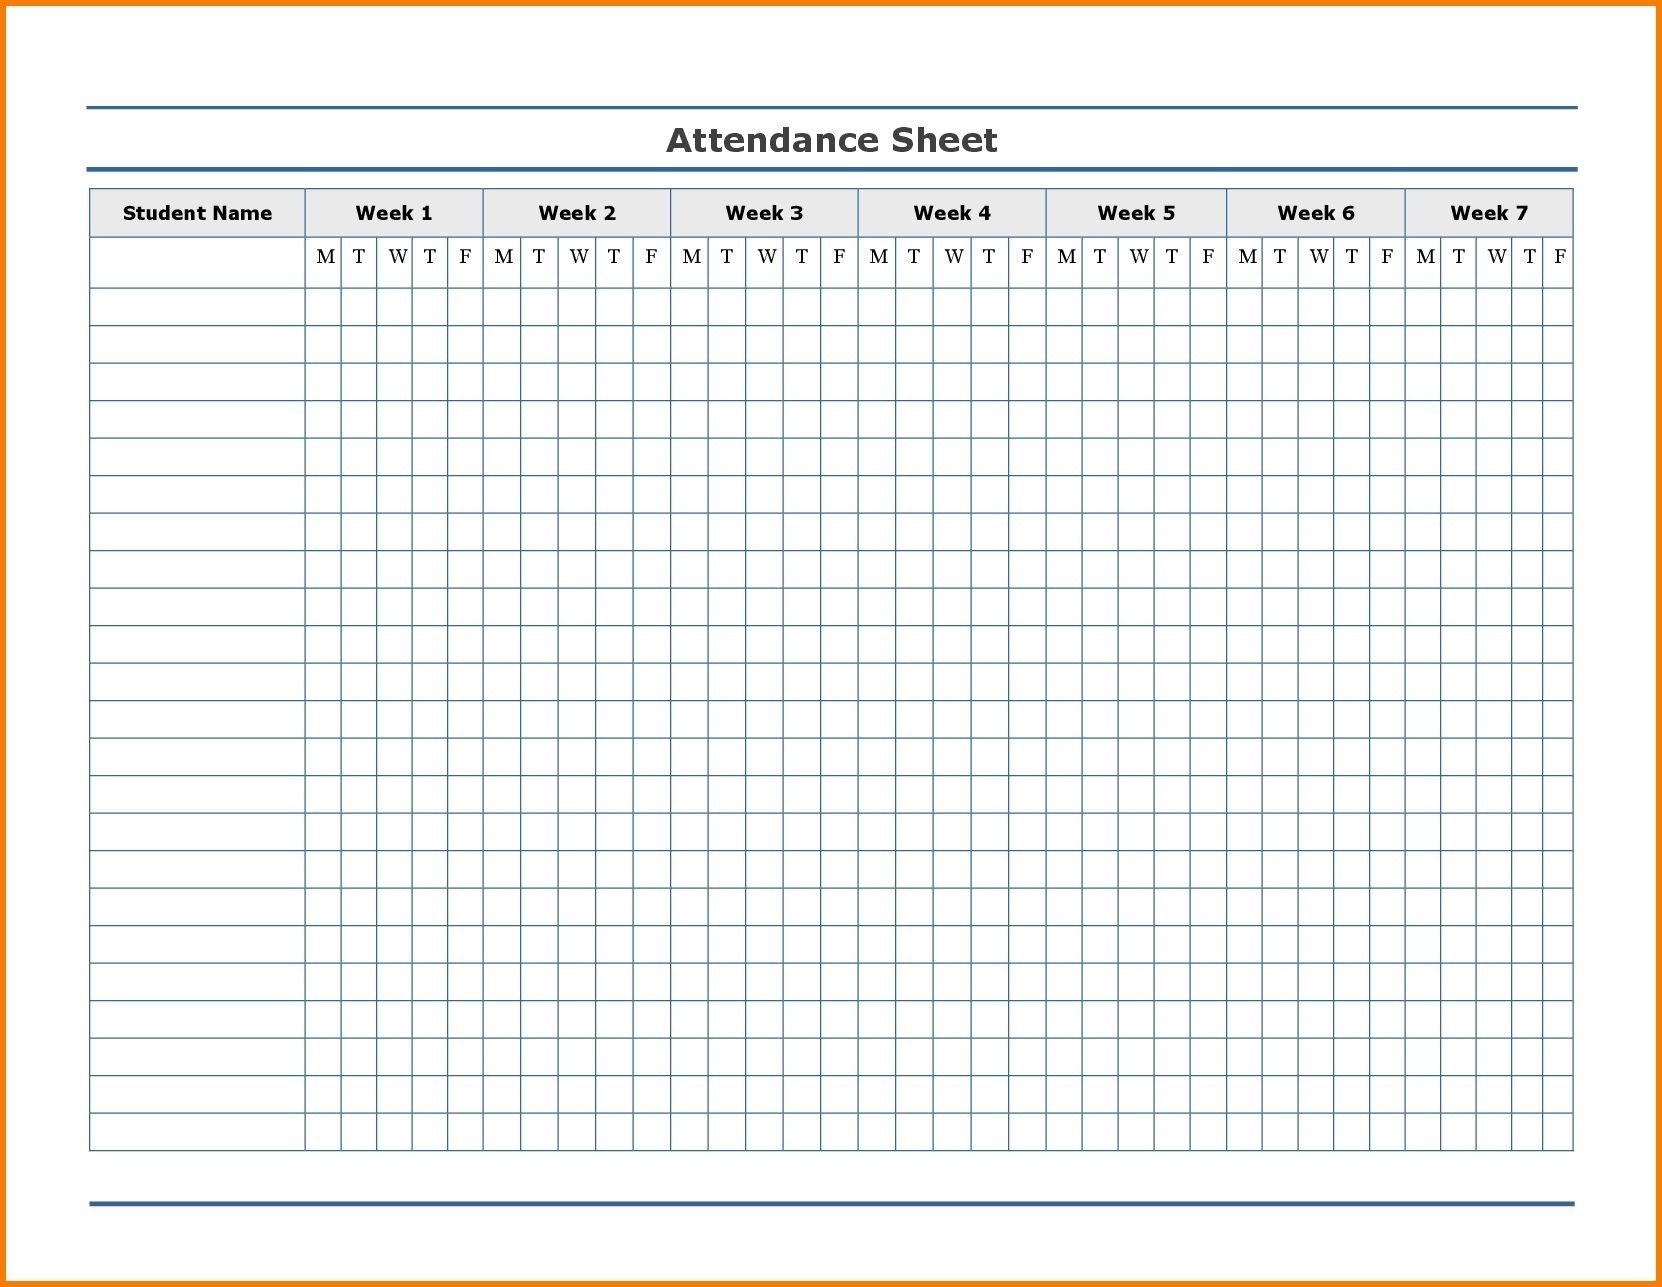 Free Employee Attendance Calendar | Employee Tracker  2020 Employee Attendance Calendar Pdf